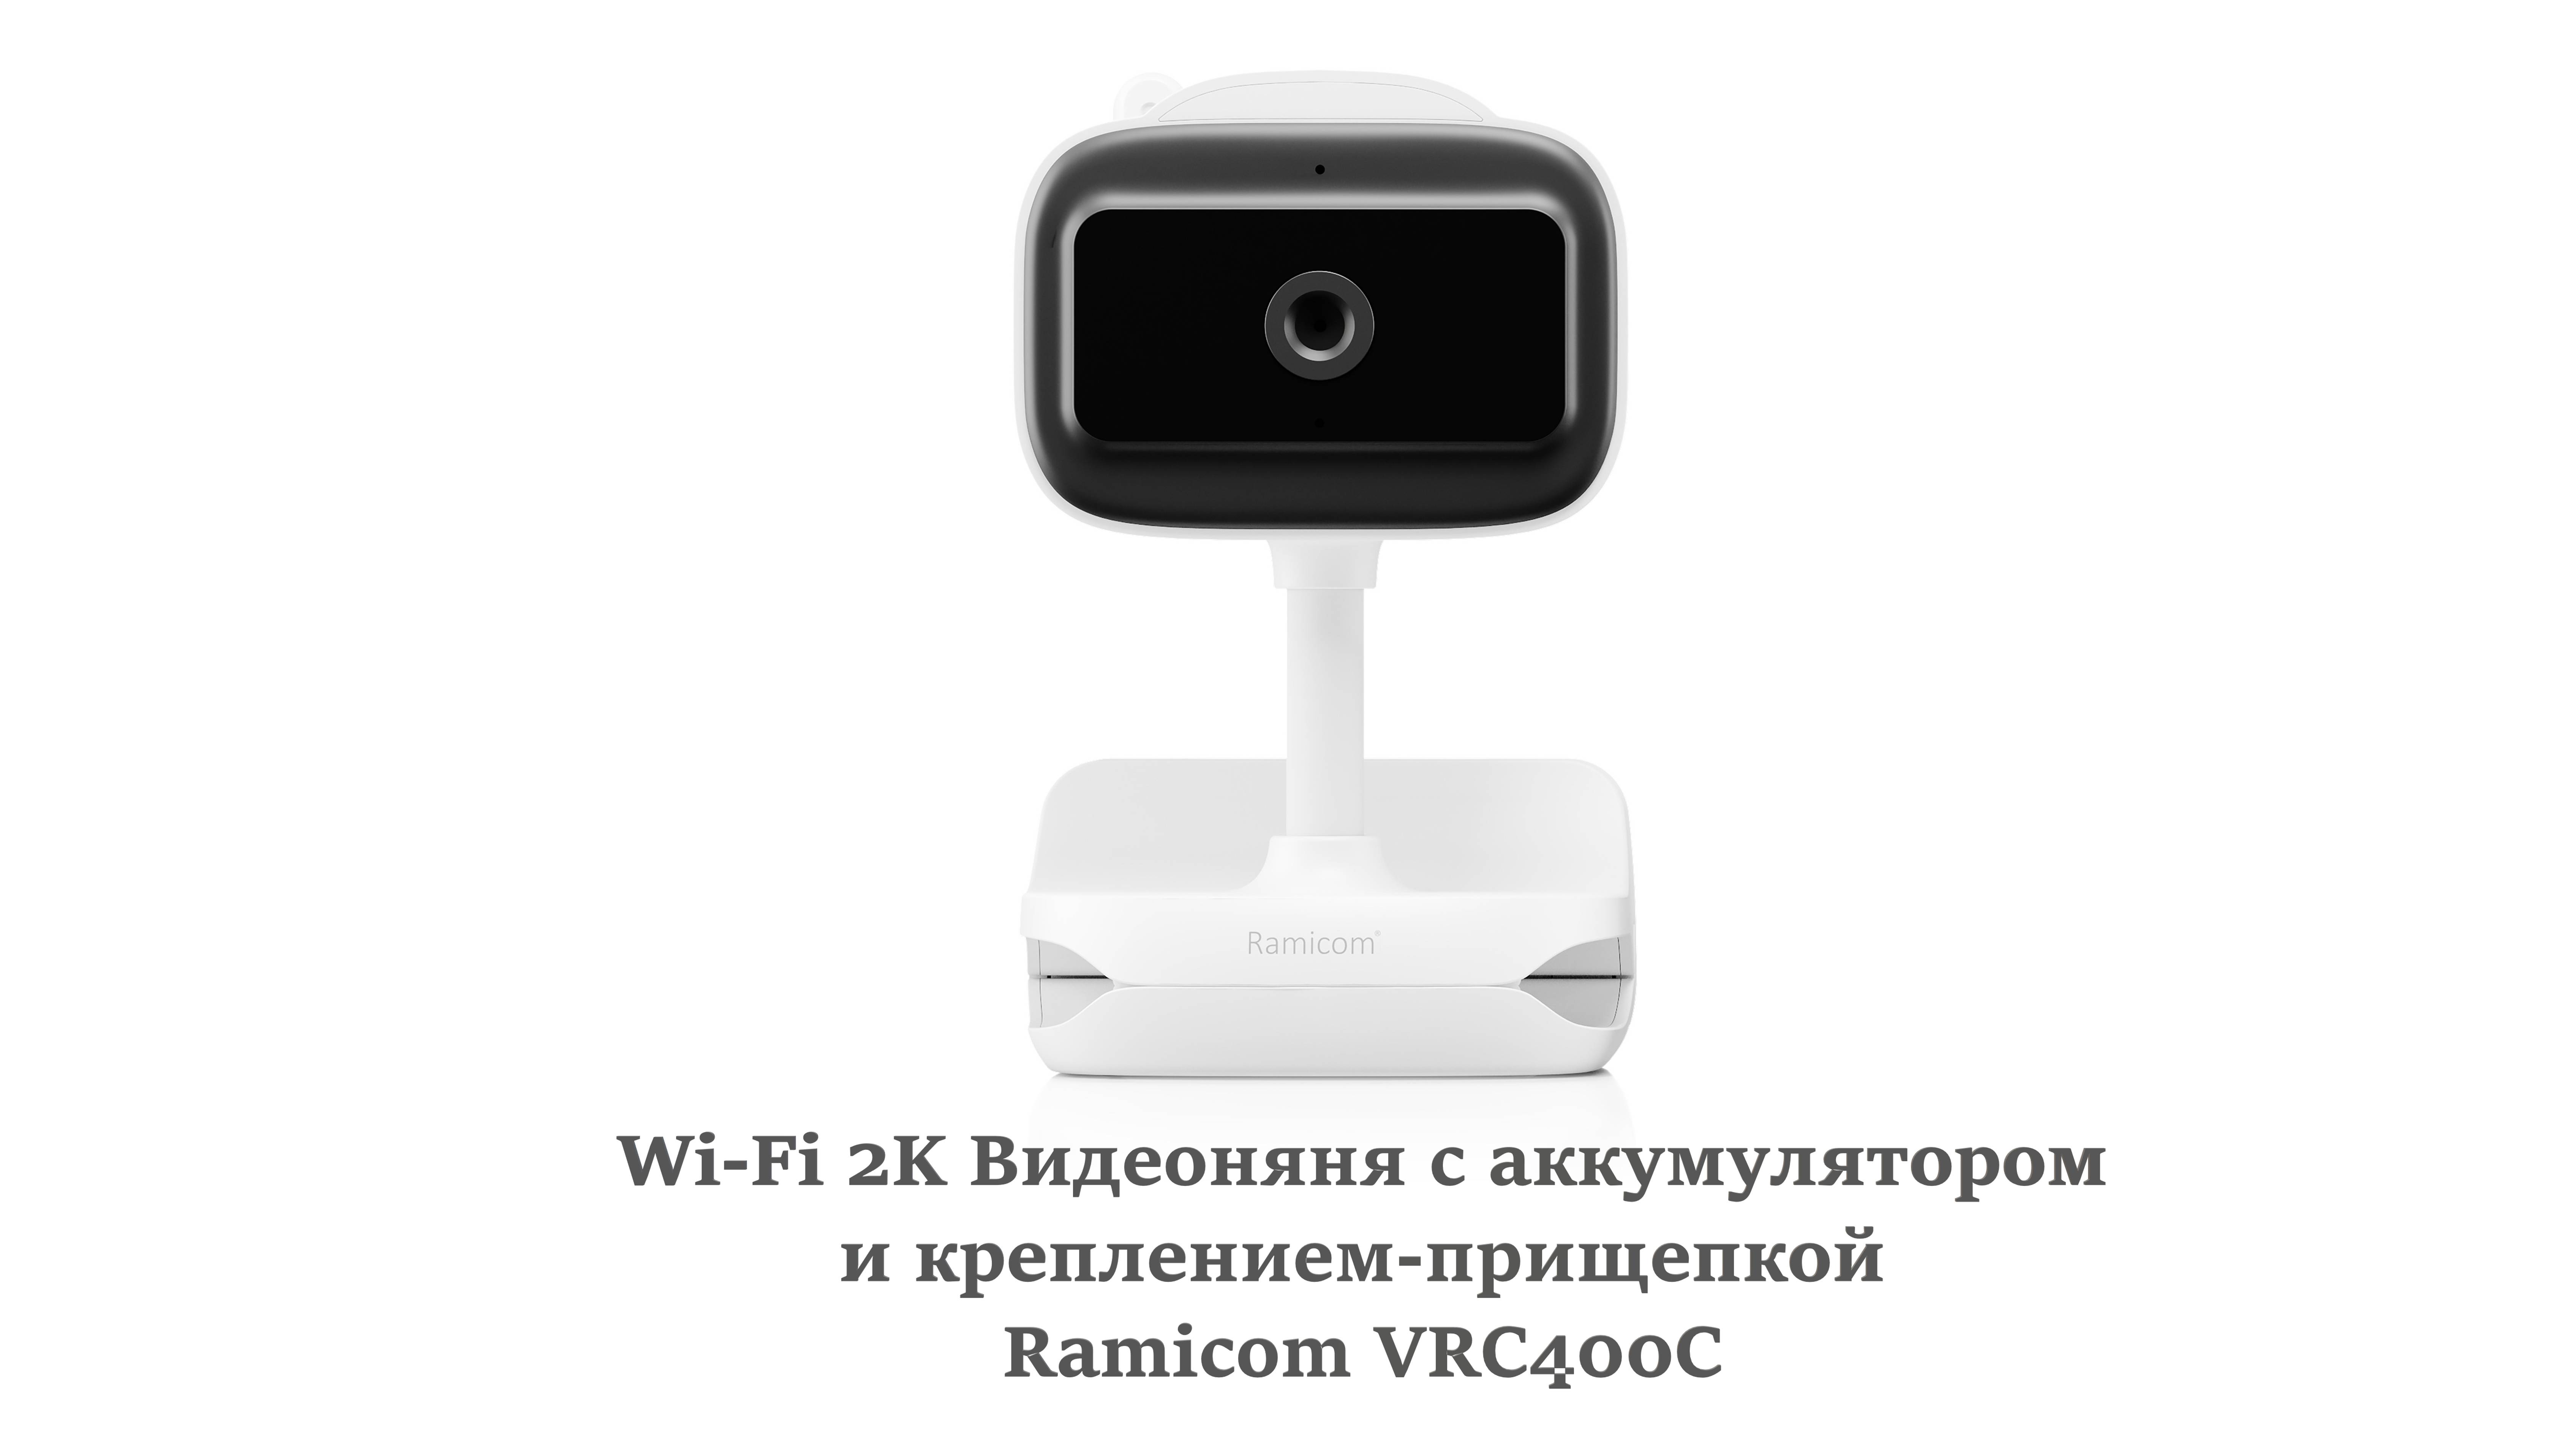 Обзор на Wi-Fi 2K Видеоняню с аккумулятором и креплением-прищепкой Ramicom VRC400C